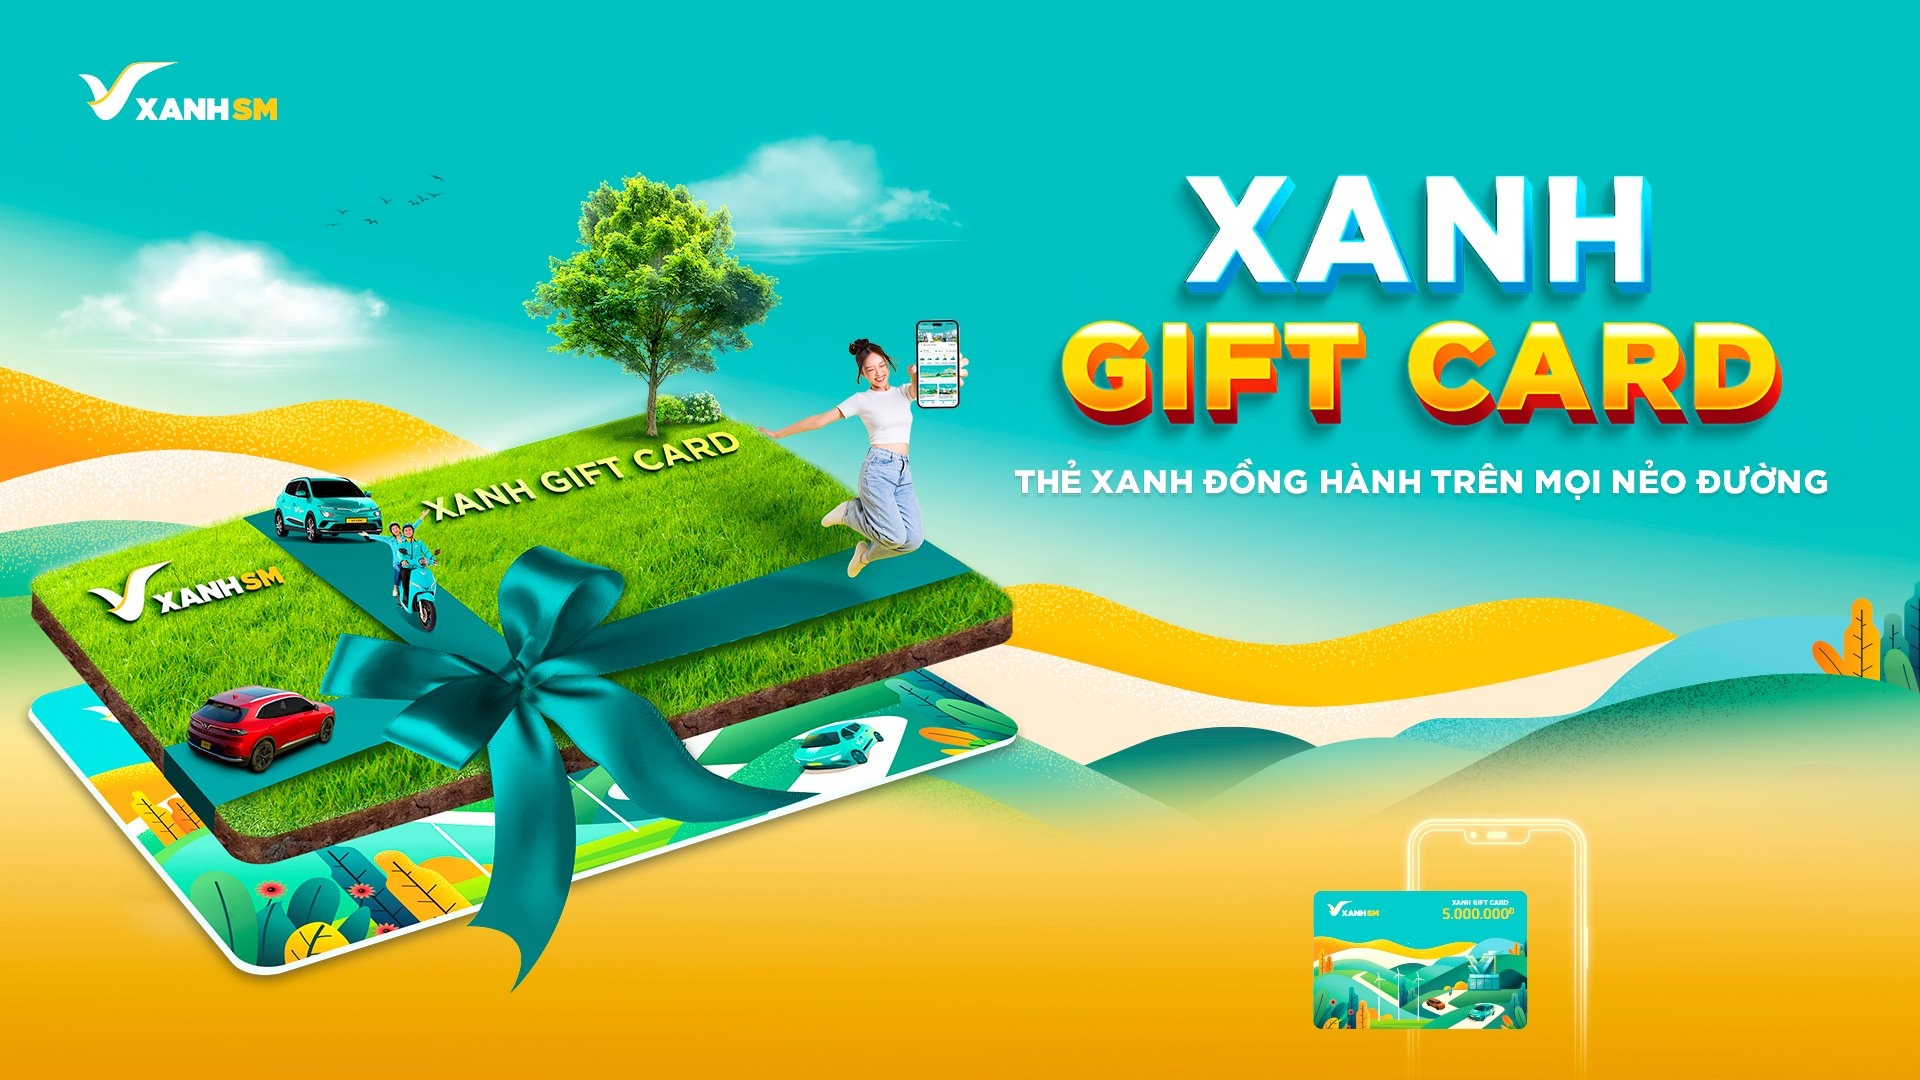 Xanh SM ra mắt thẻ quà tặng Xanh Gift Card nhân mùa lễ hội cuối năm